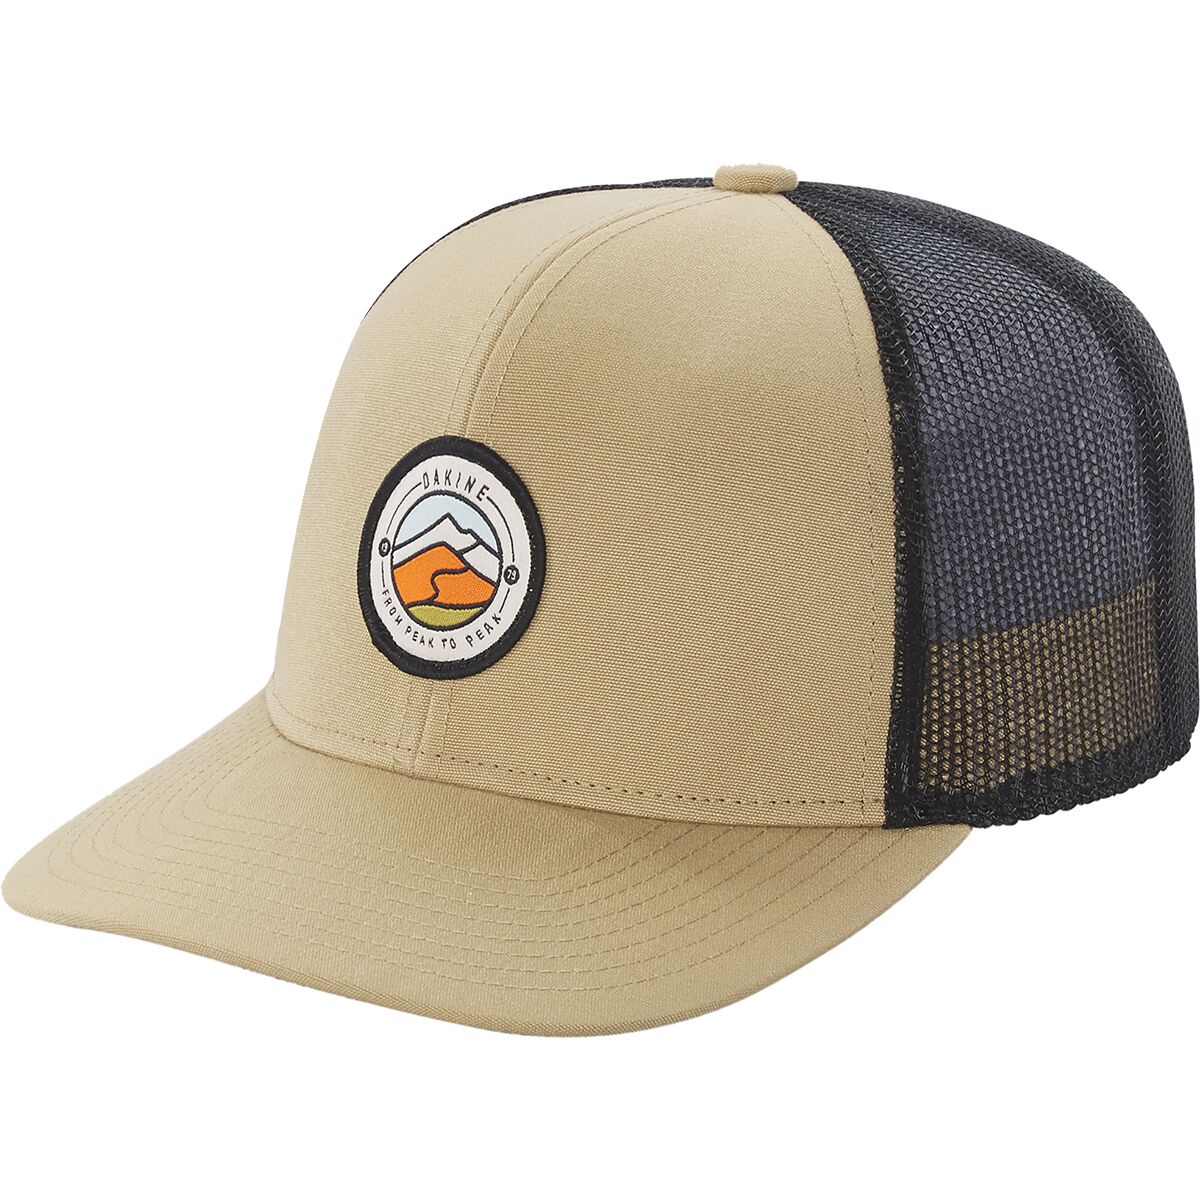 DAKINE Twin Peaks Eco Trucker Hat